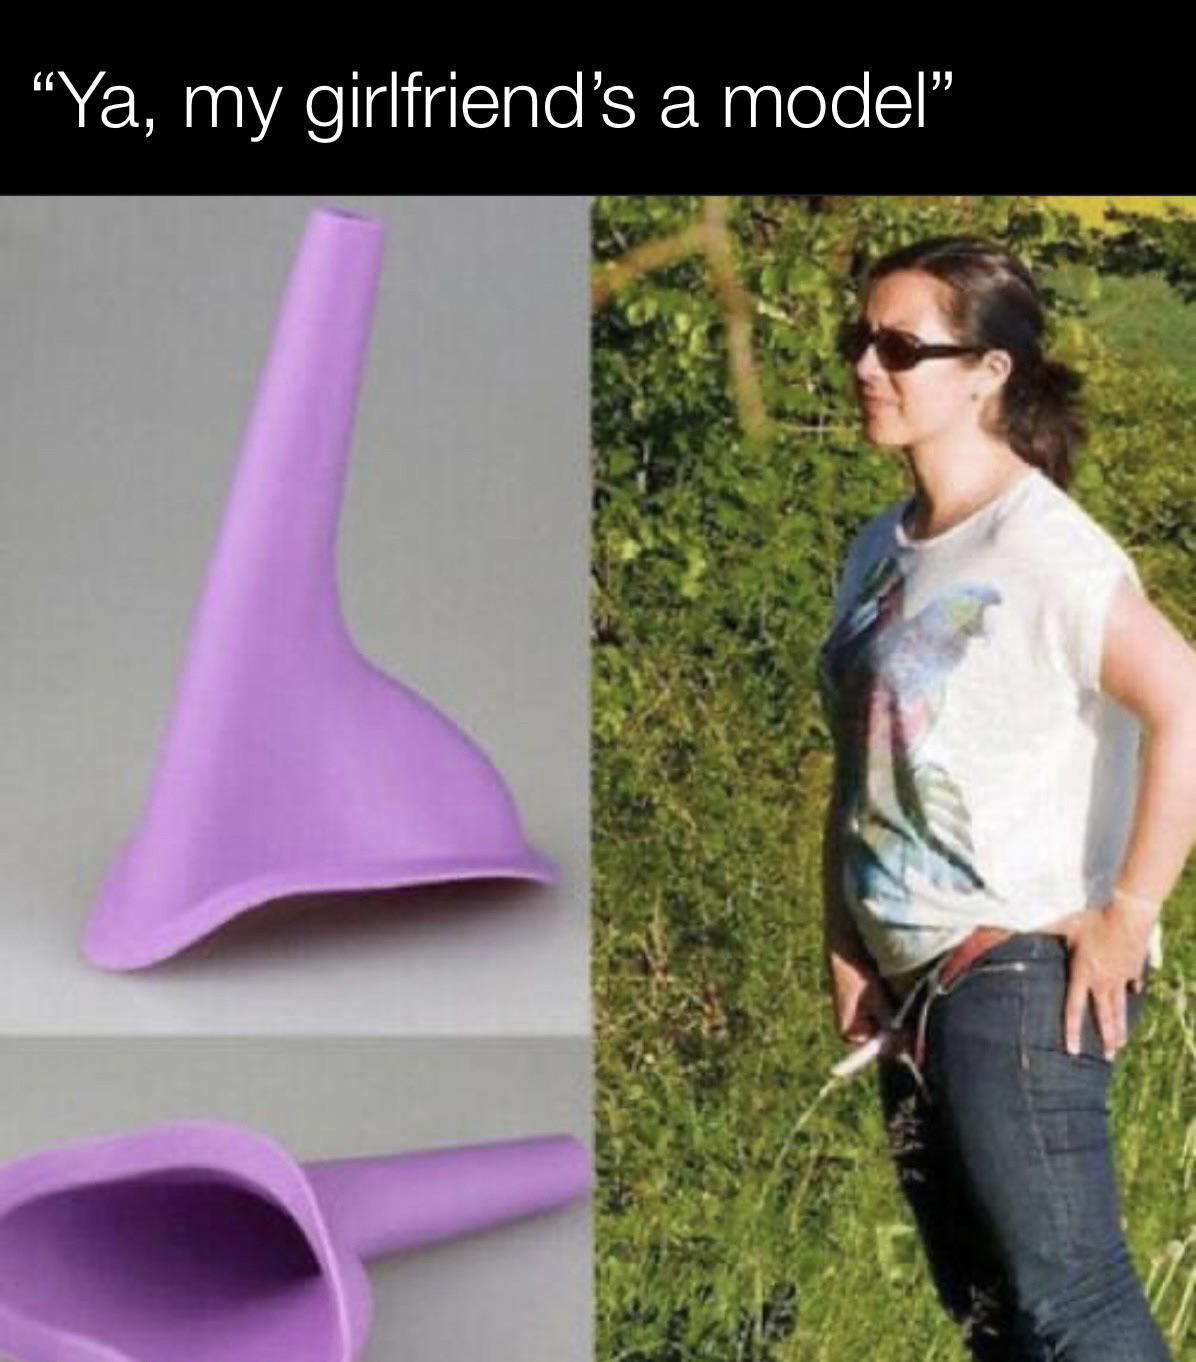 funny memes - women's pee cup - Ya, my girlfriend's a model